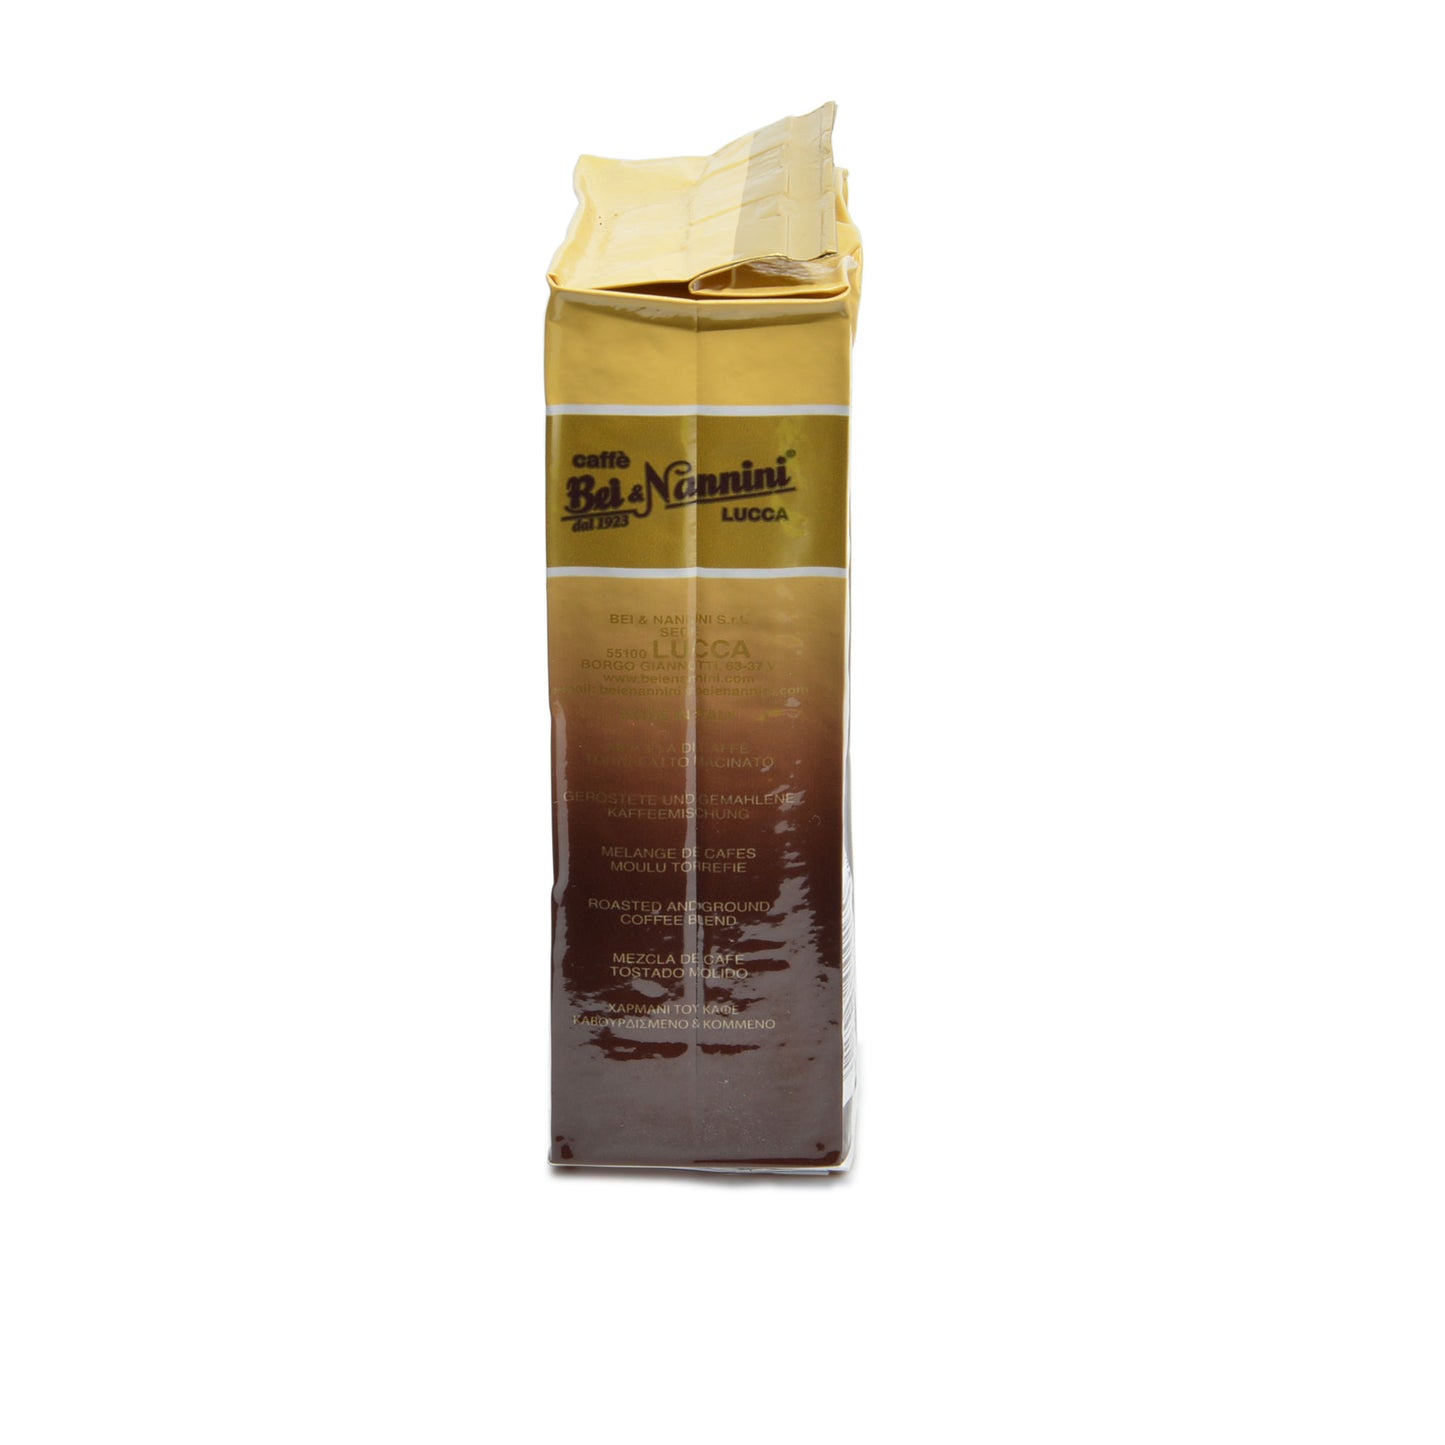 
                  
                    Caffe' Miscela Delicato - sacchetto macinato moca gr. 250 (n. 4 pacchetti da gr. 250 ciascuno)
                  
                